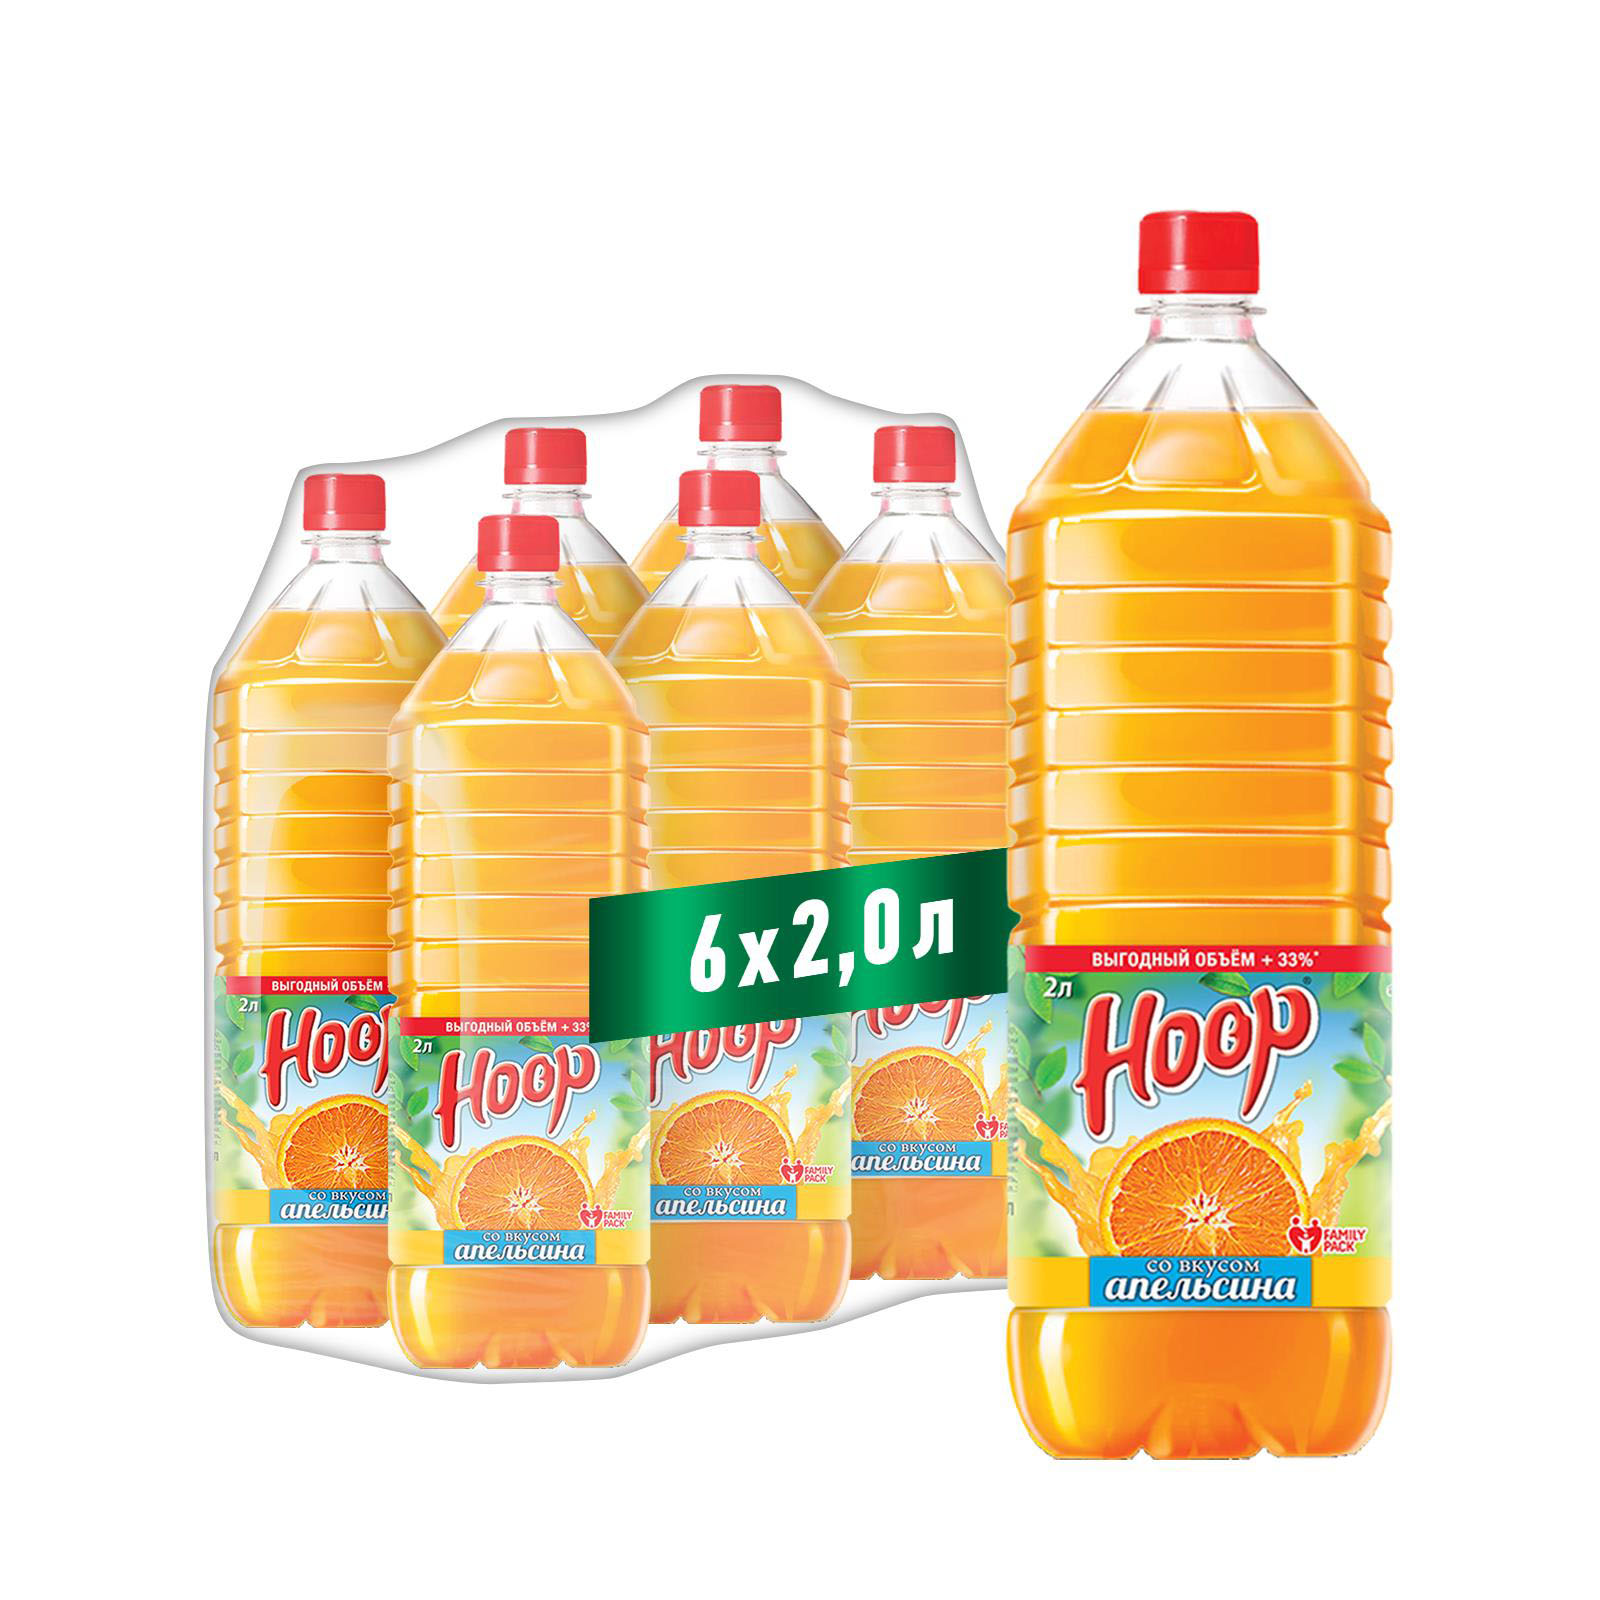 Негазированный напиток HOOP апельсиновый вкус 2л х 6 шт. - фото 2